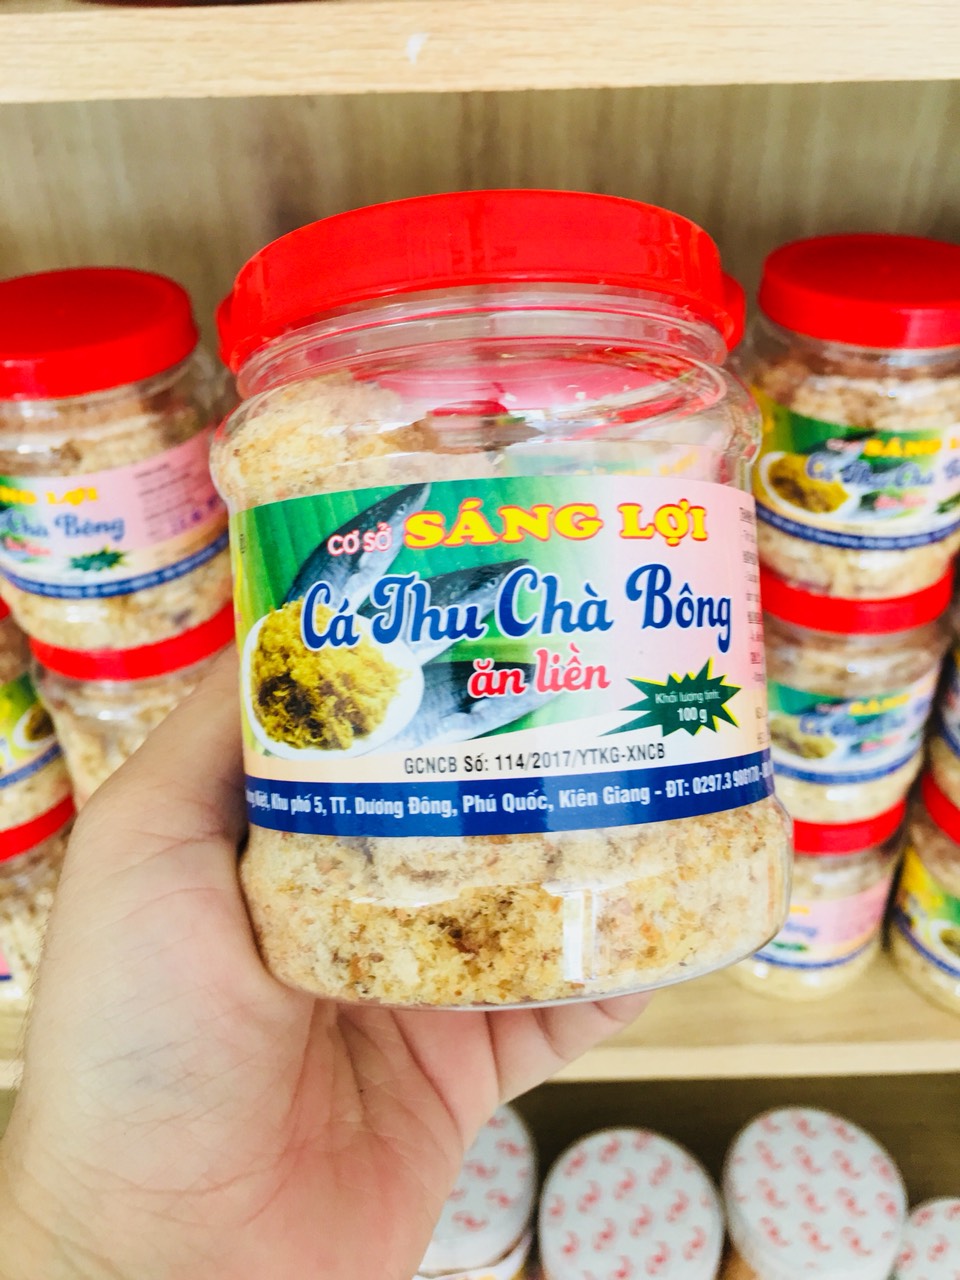 Cá Thu Chà Bông Đặt sản Phú Quốc thơm ngon 100gr